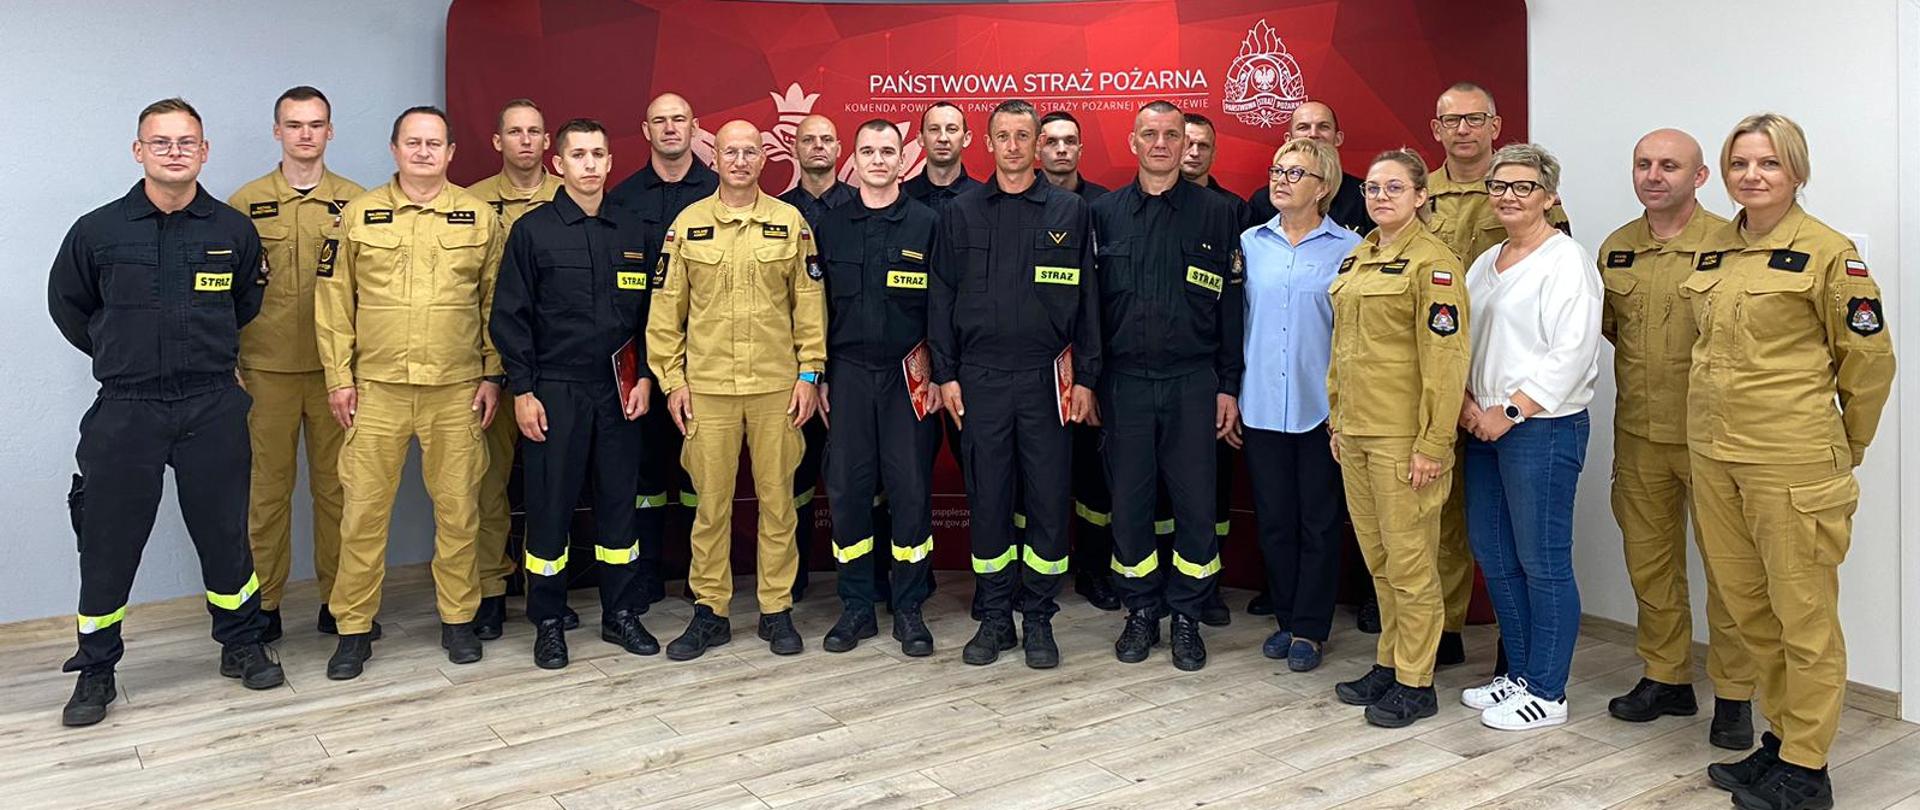 Uczestnicy uroczystej zbiórki podczas której wyróżniono pleszewskich strażaków biorących udział w międzynarodowej misji gaśniczej na terytorium Grecji.